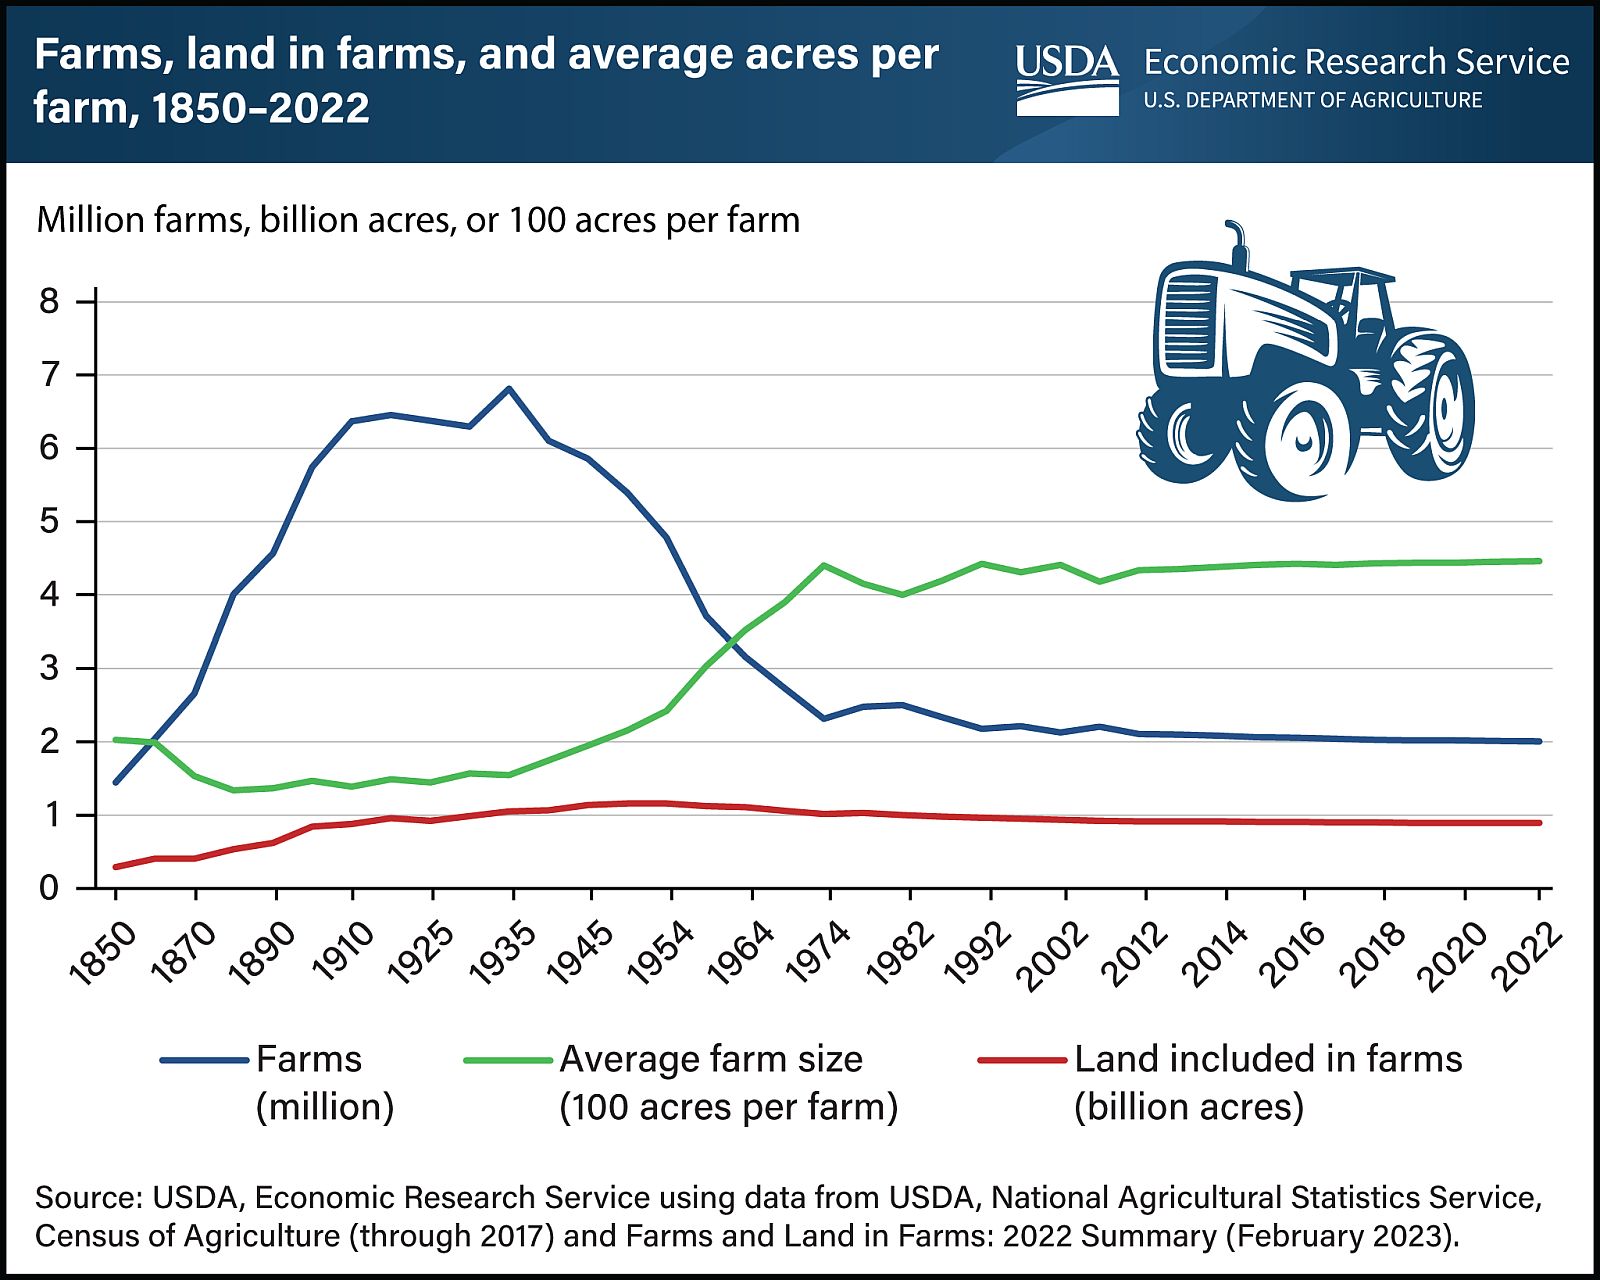 Zahl der landwirtschaftlichen Betriebe in den USA geht weiter zurück, aber Betriebsgröße nimmt leicht zu